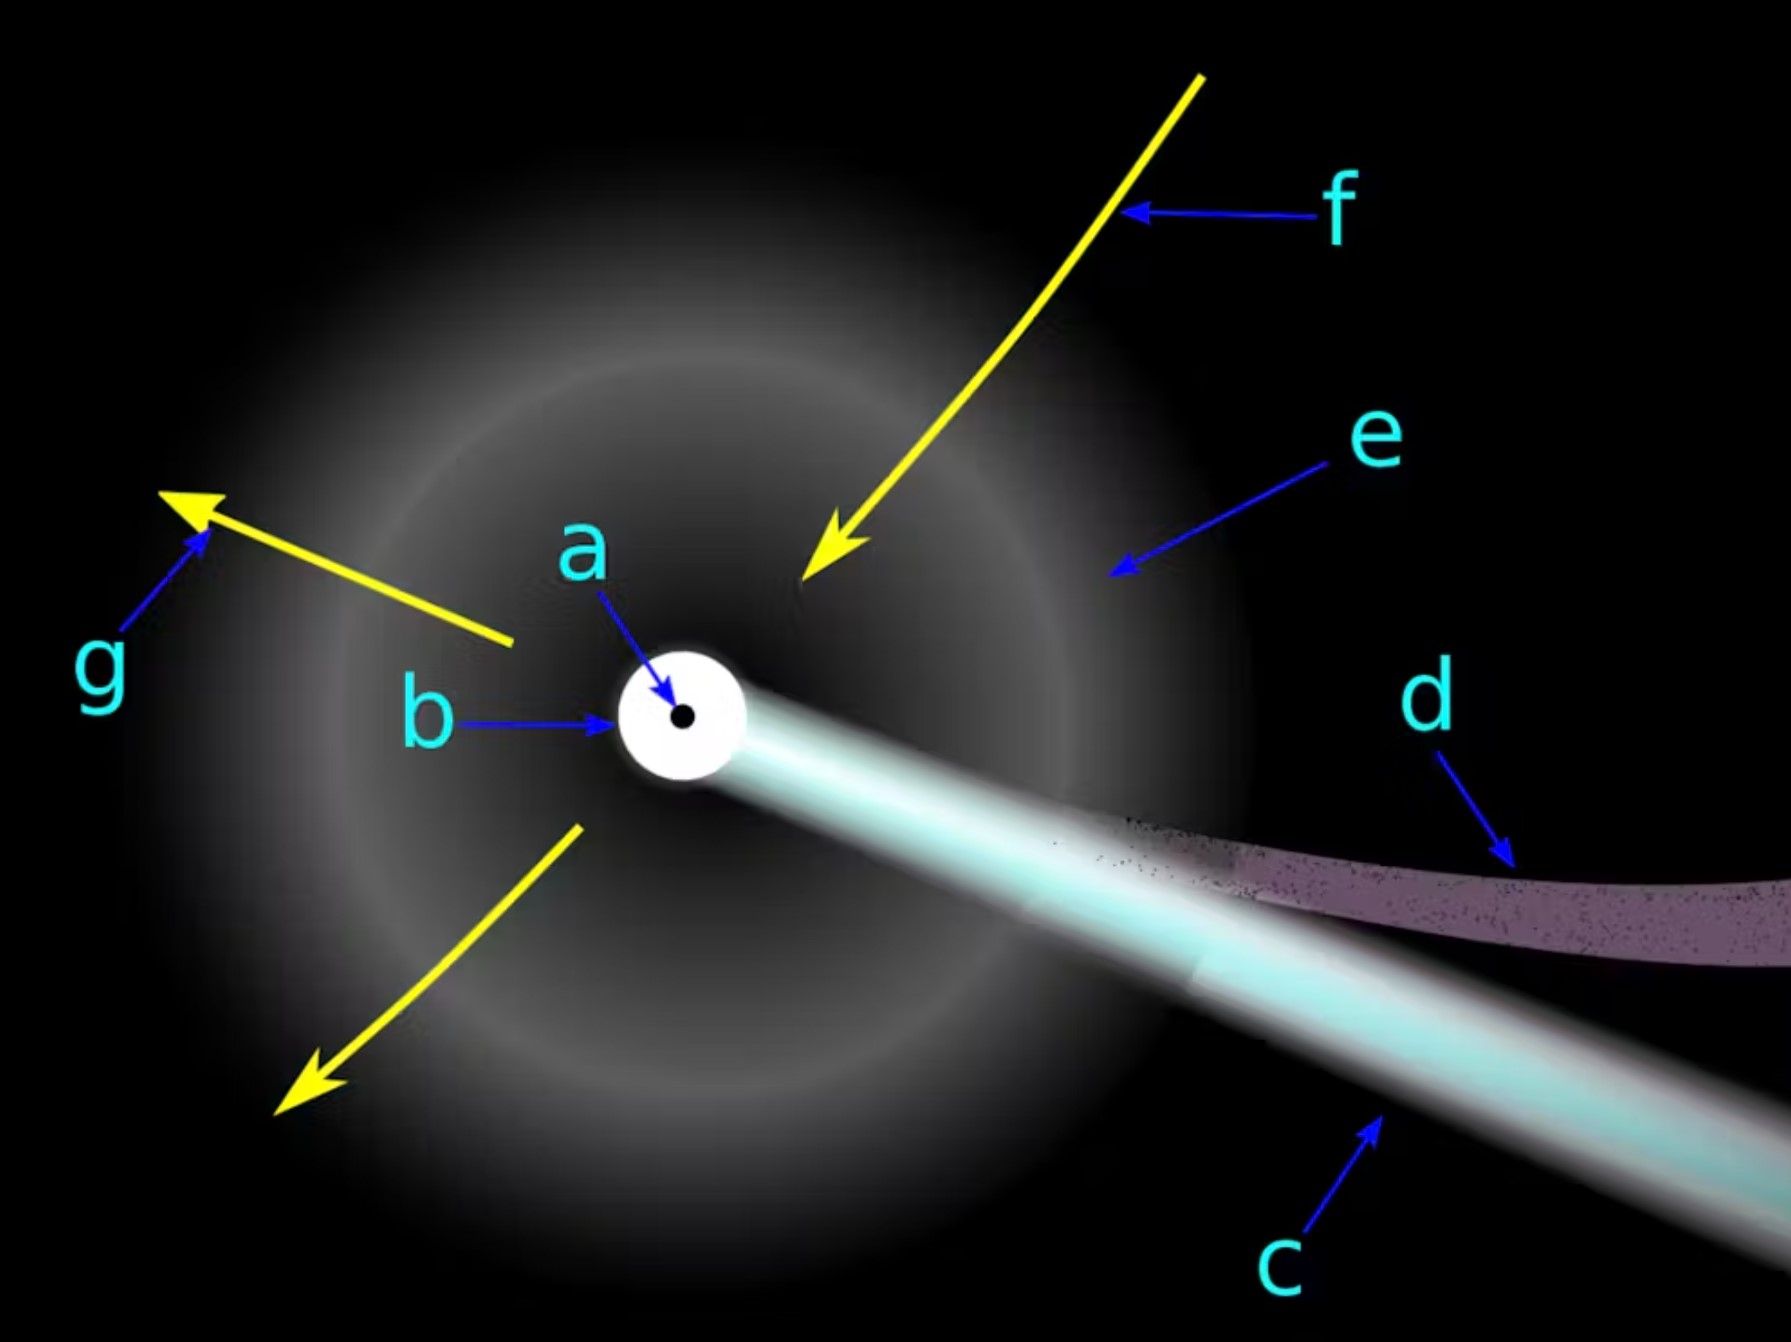 un diagrama que muestra una esfera brillante con una raya blanca difusa que sale de ella